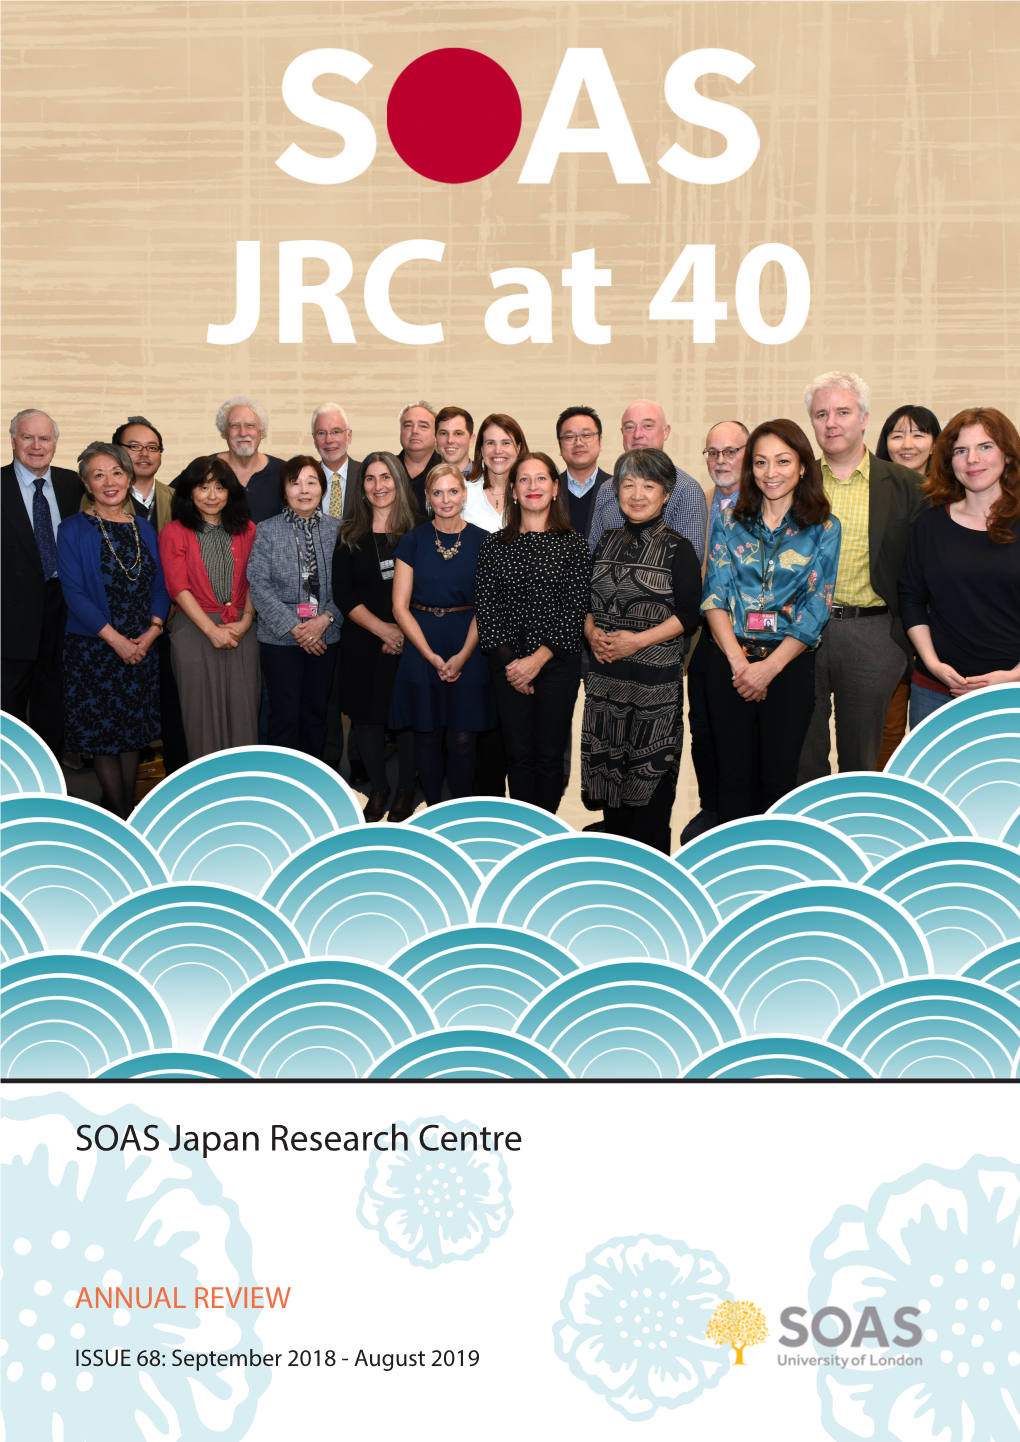 SOAS Japan Research Centre